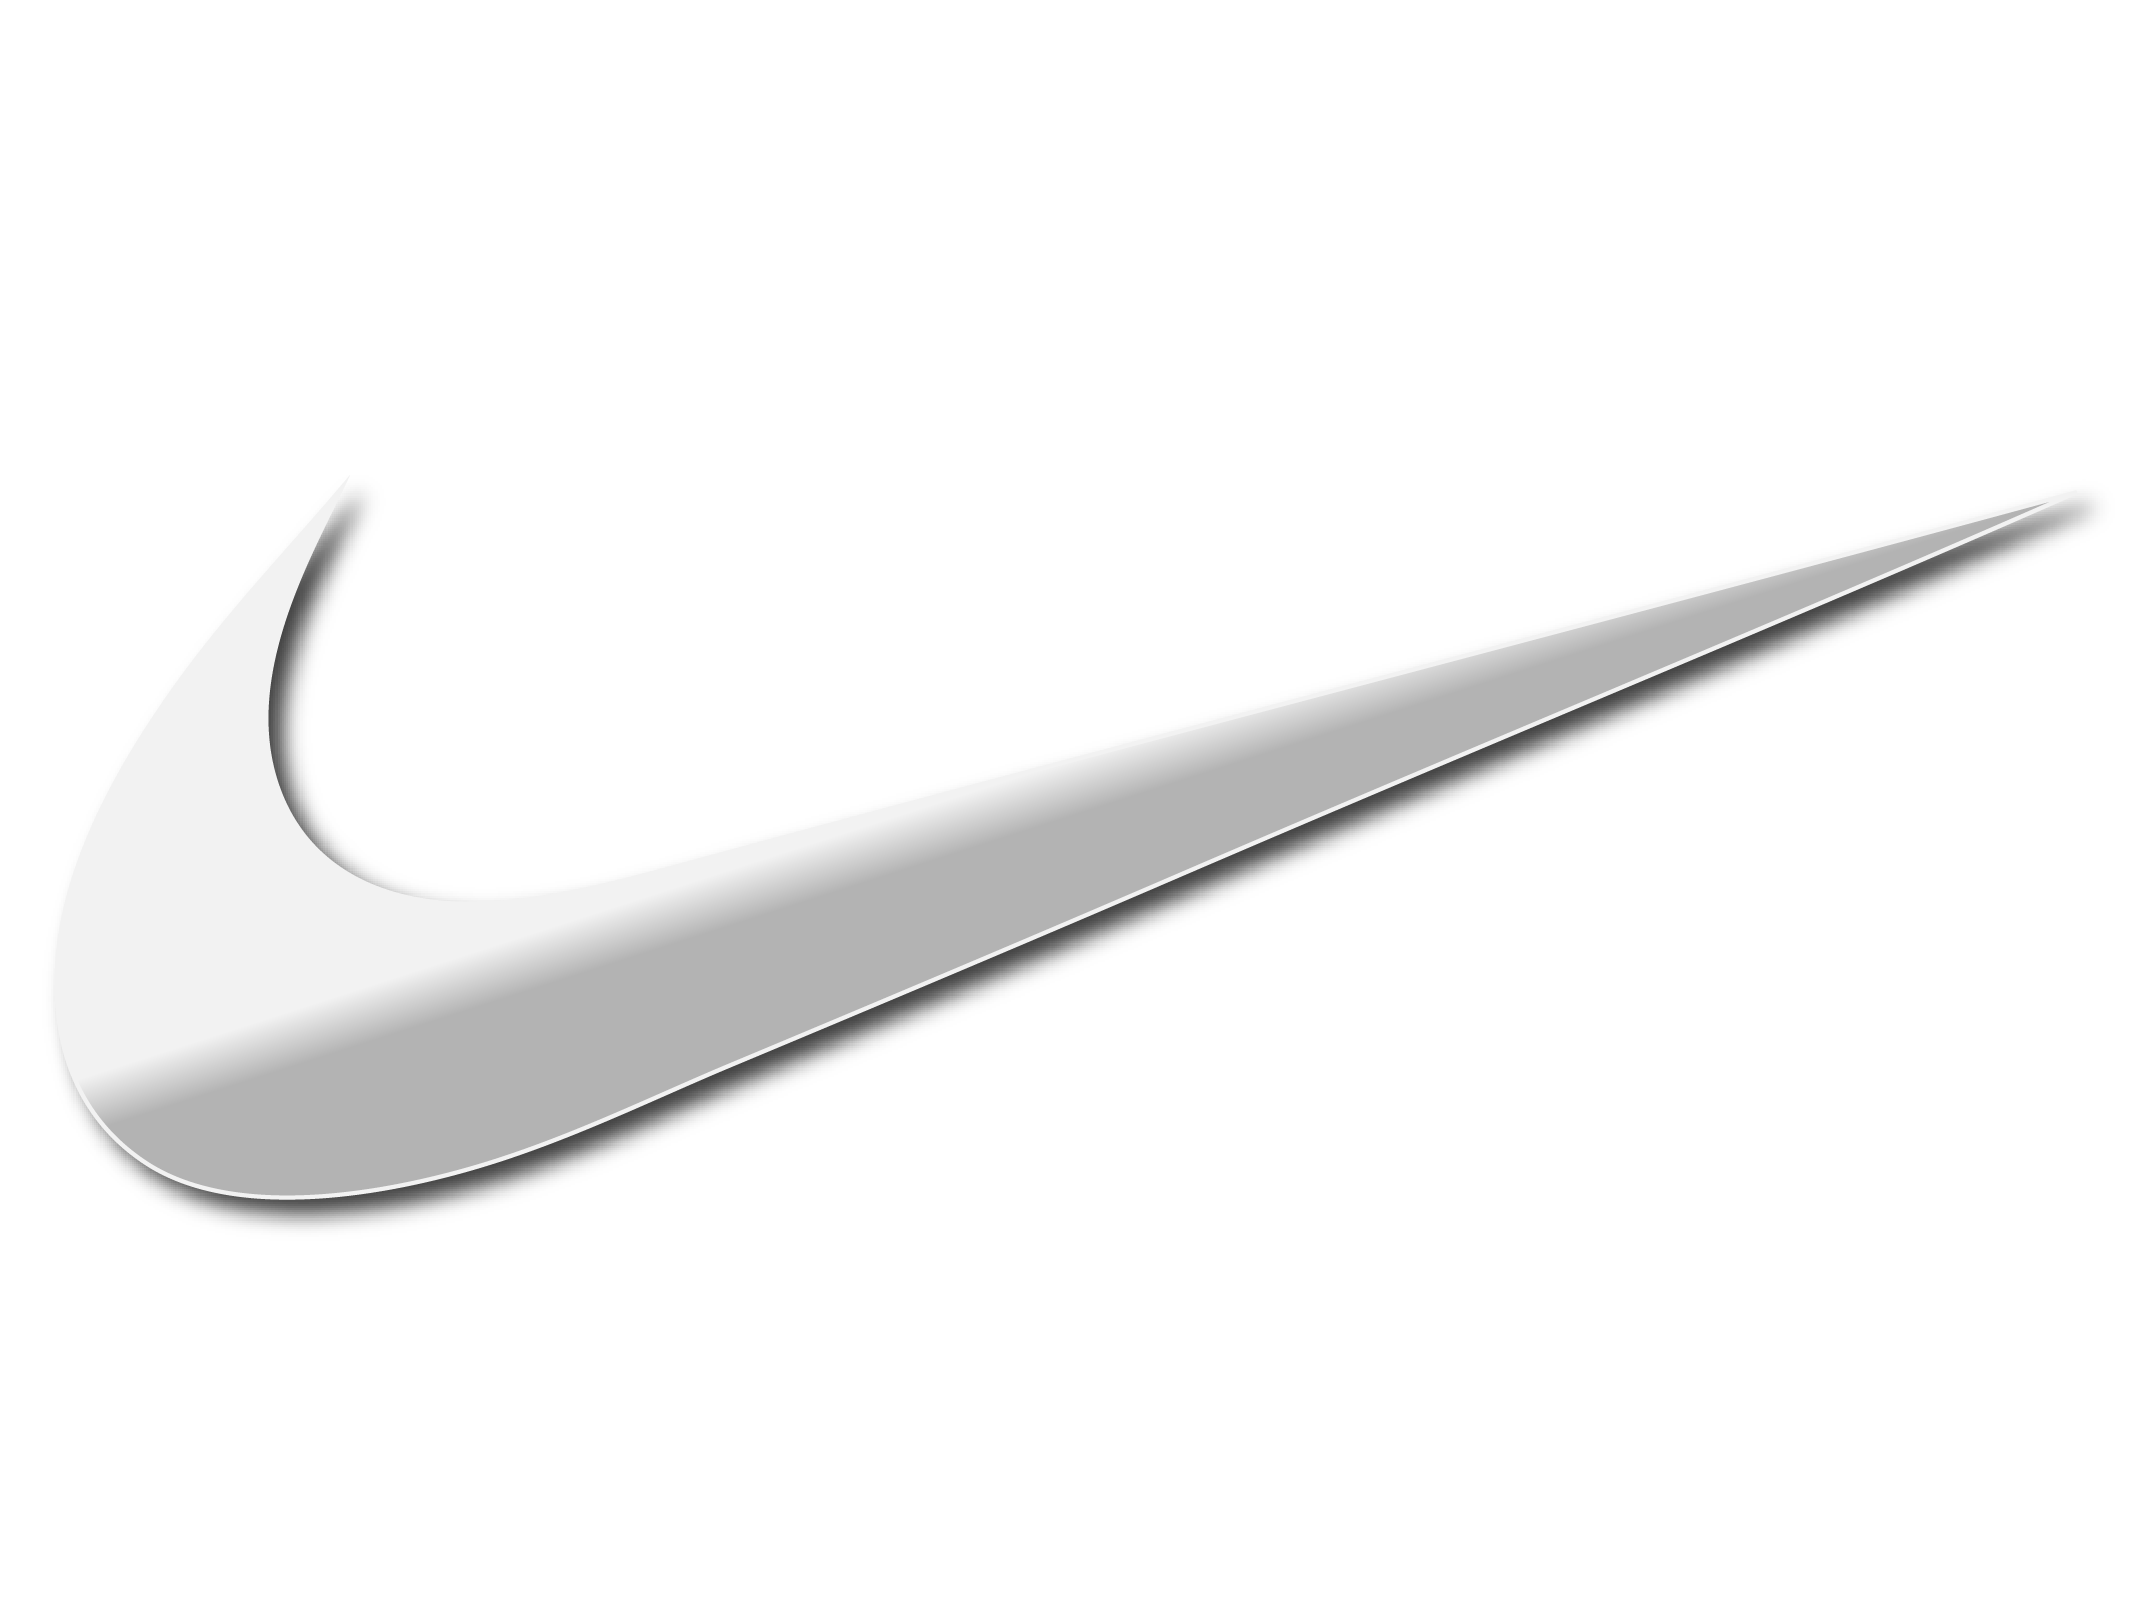 Nike Swoosh Logo Png